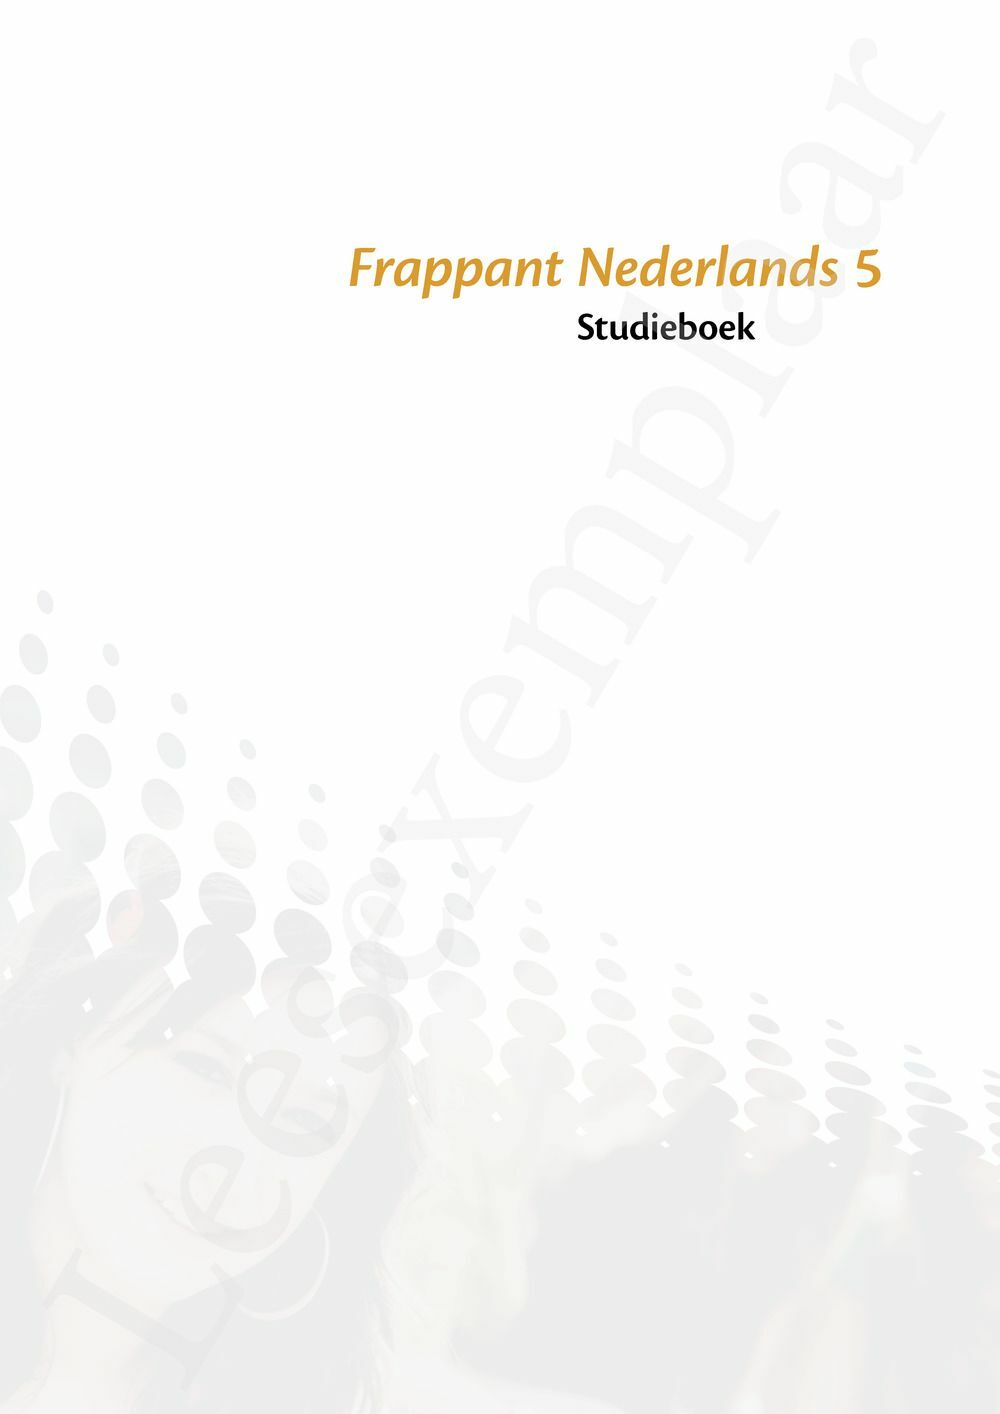 Preview: Frappant Nederlands 5 aso studieboek